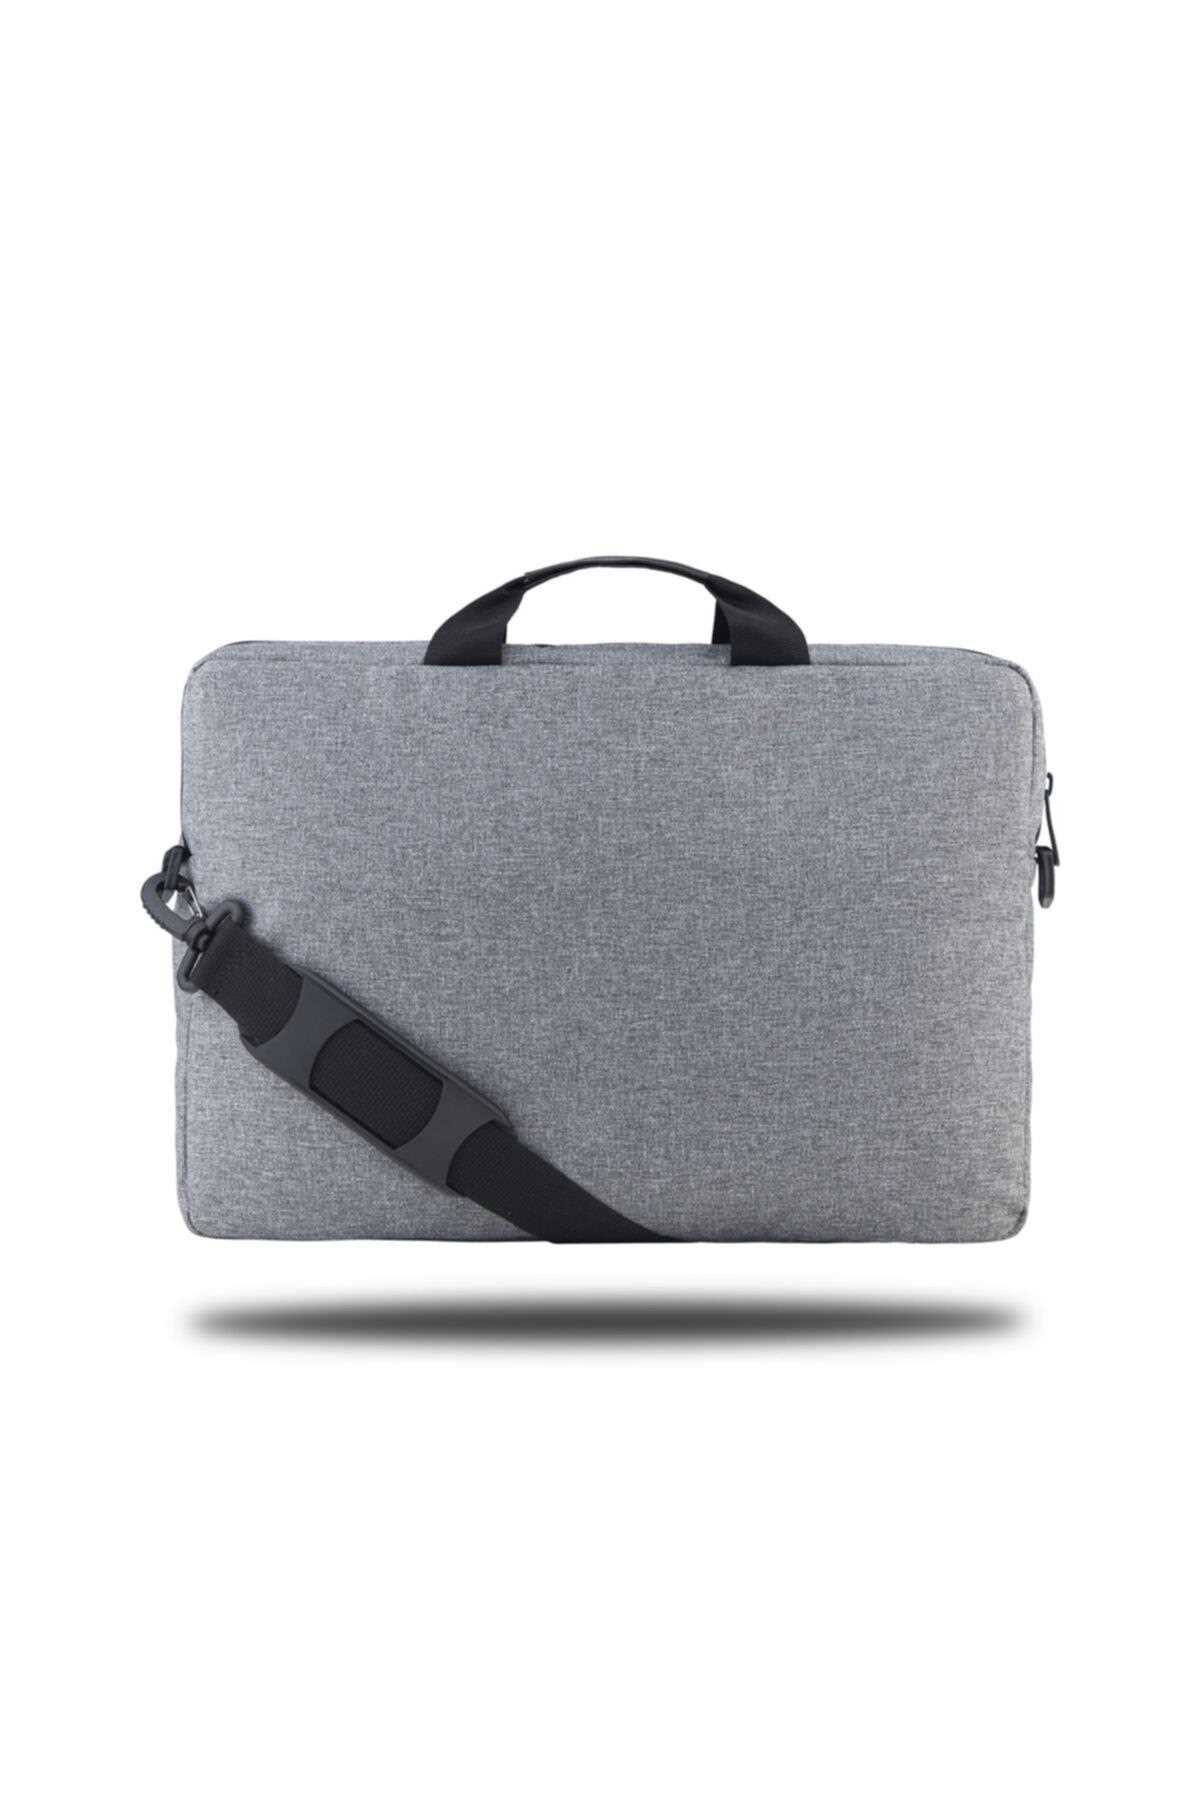 کیف لپ تاپ 15.6 اینچ اسپرت زیبا Classone رنگ نقره ای ty102339733